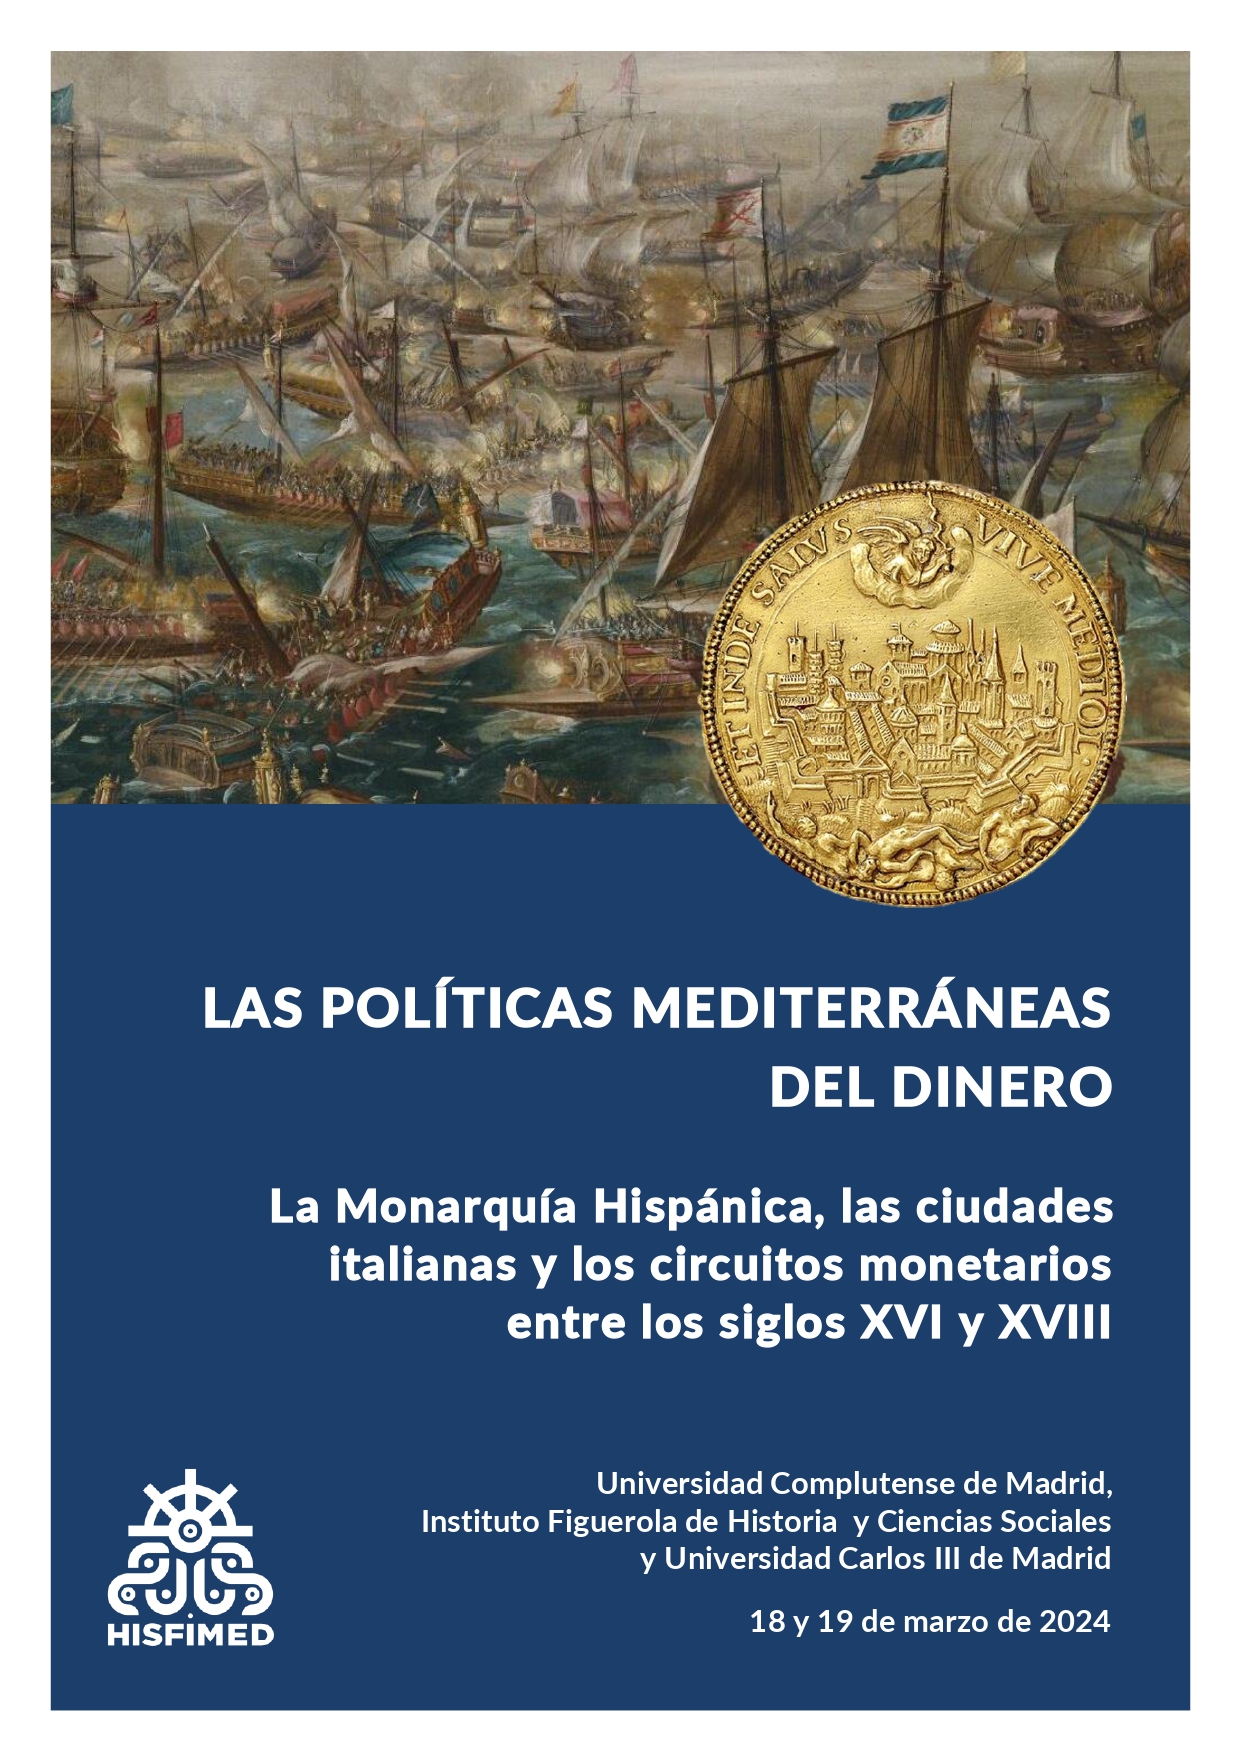 Las políticas Mediterráneas del dinero. La Monarquía Hispánica, las ciudades italianas y los circuitos monetarios entre los siglos XVI y XVIII